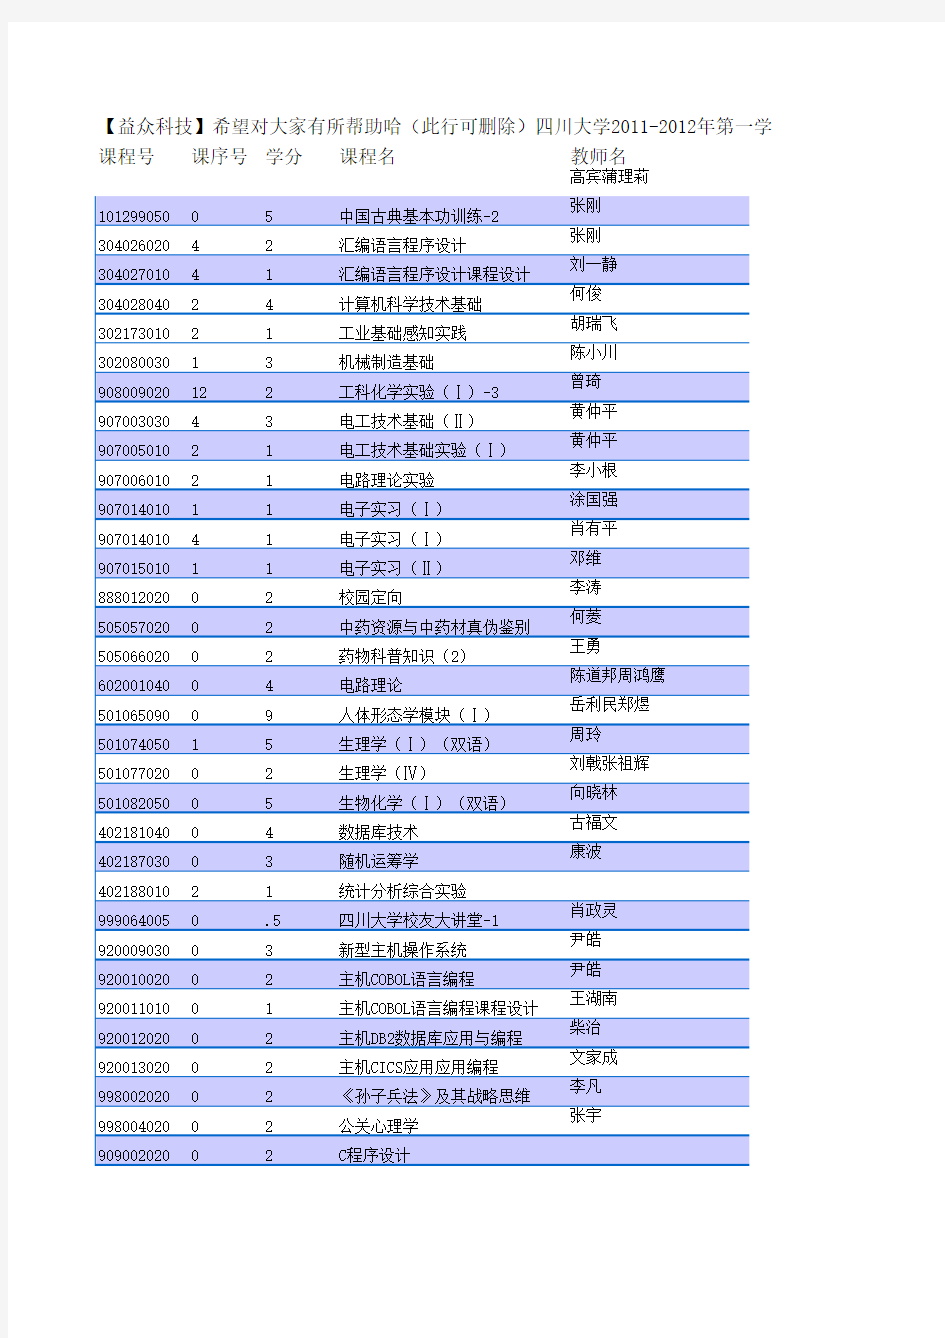 【益众】四川大学2011-2012年第一学期选课手册